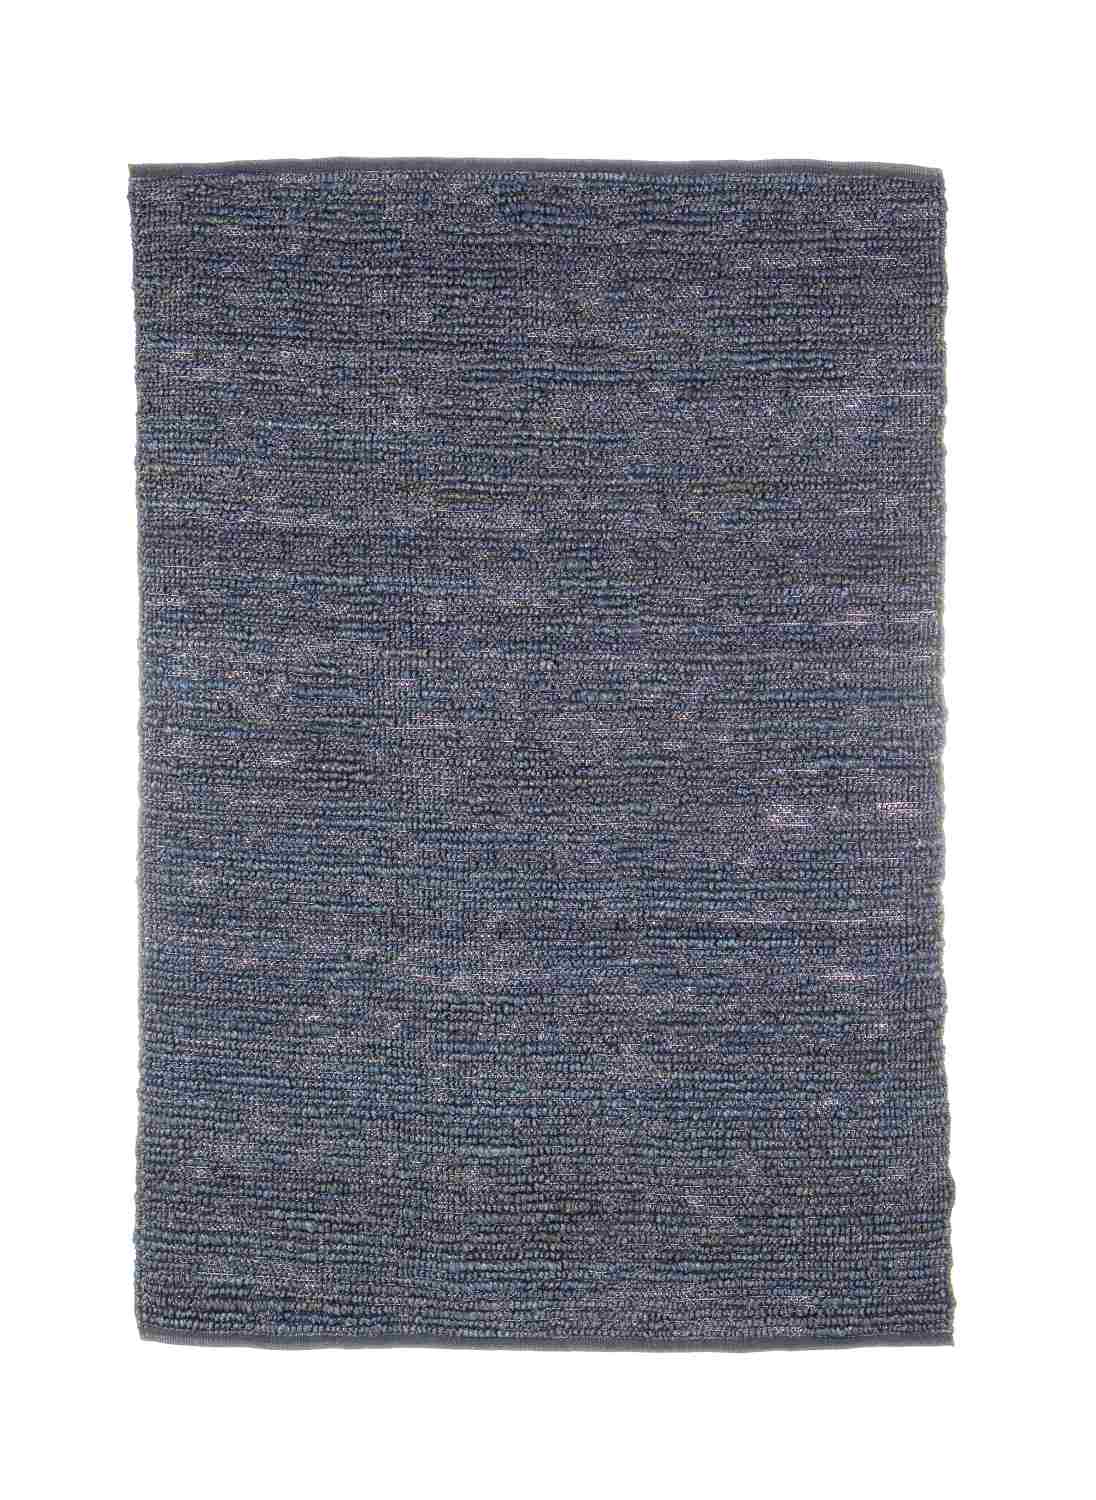 Der Teppich Zanzibar überzeugt mit seinem klassischen Design. Gefertigt wurde er aus 100% Jute. Der Teppich besitzt einen blauen Farbton und die Maße von 140x200 cm.